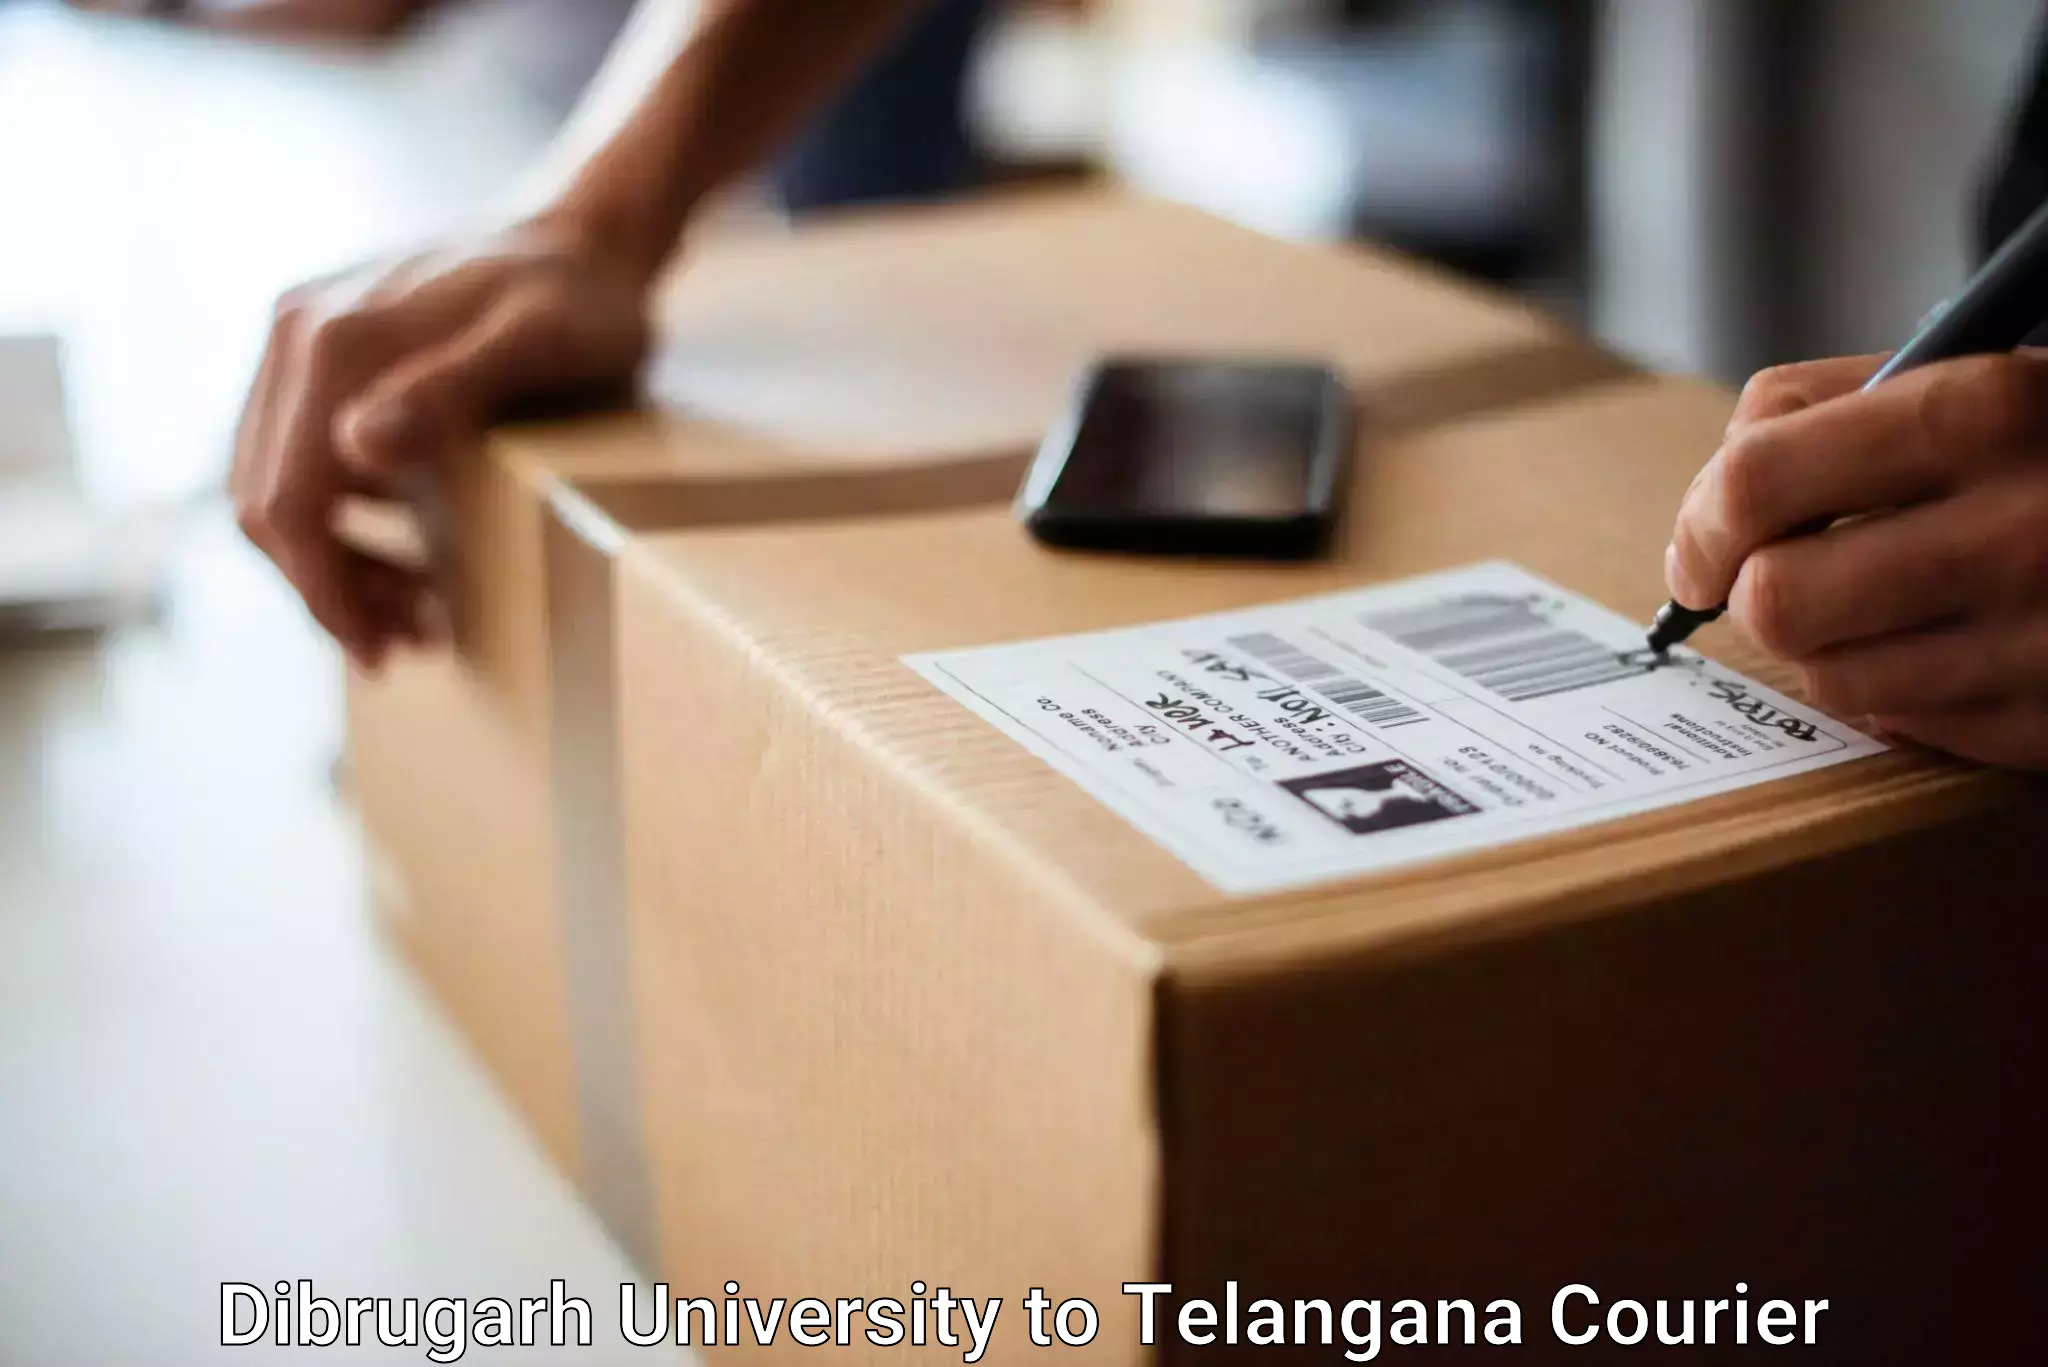 Baggage courier guide Dibrugarh University to Dharmapuri Jagtial